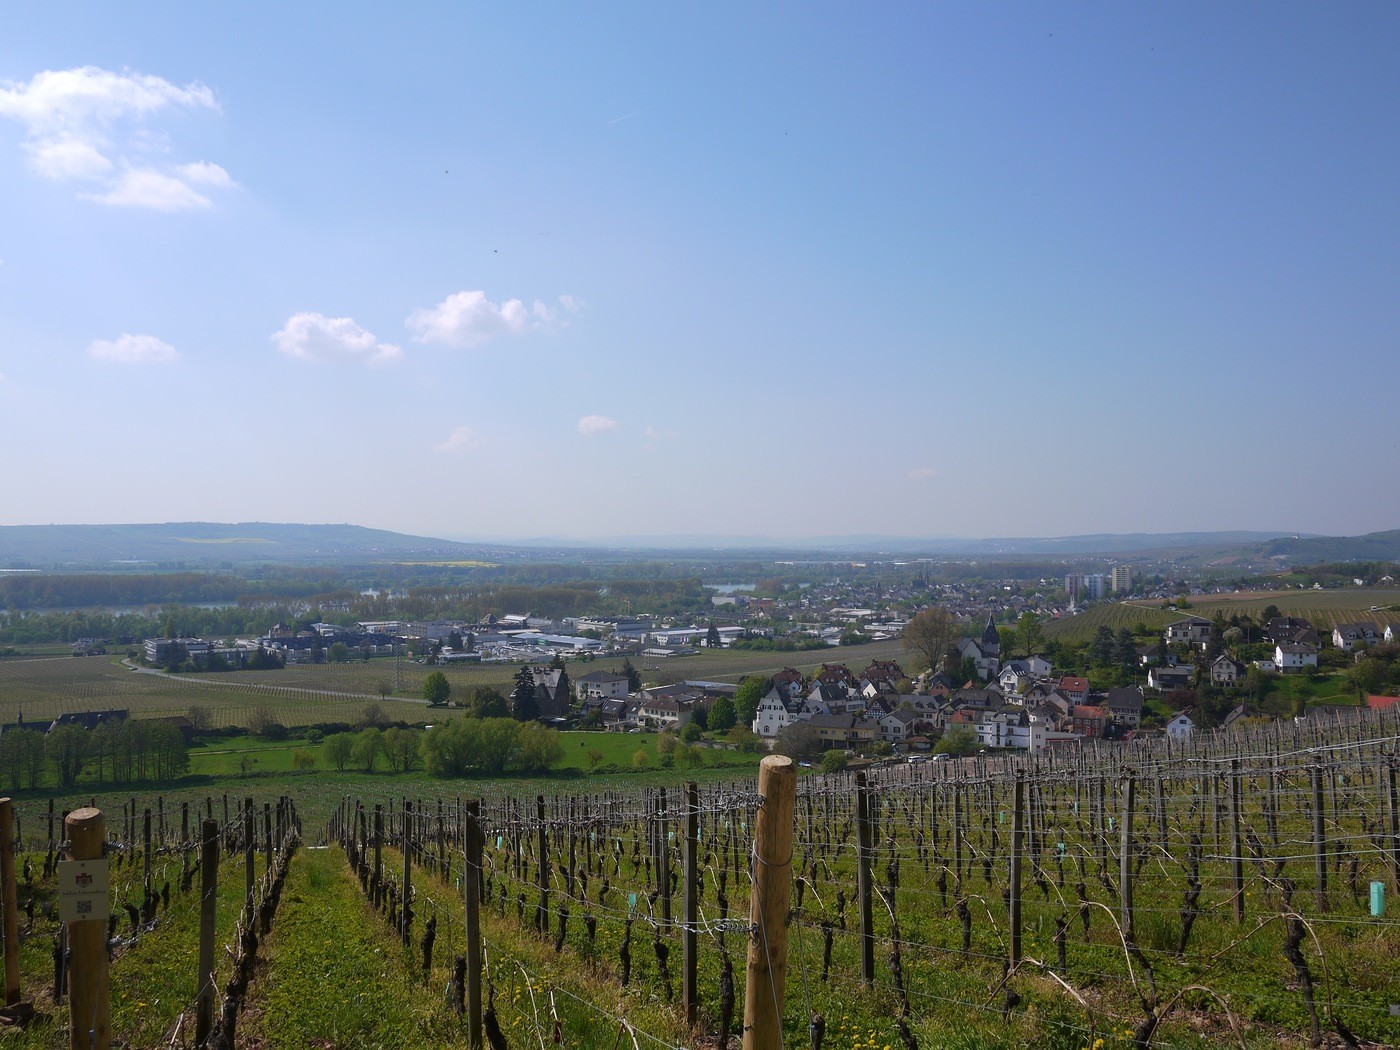 Riesling vines in Rheingau, Germany